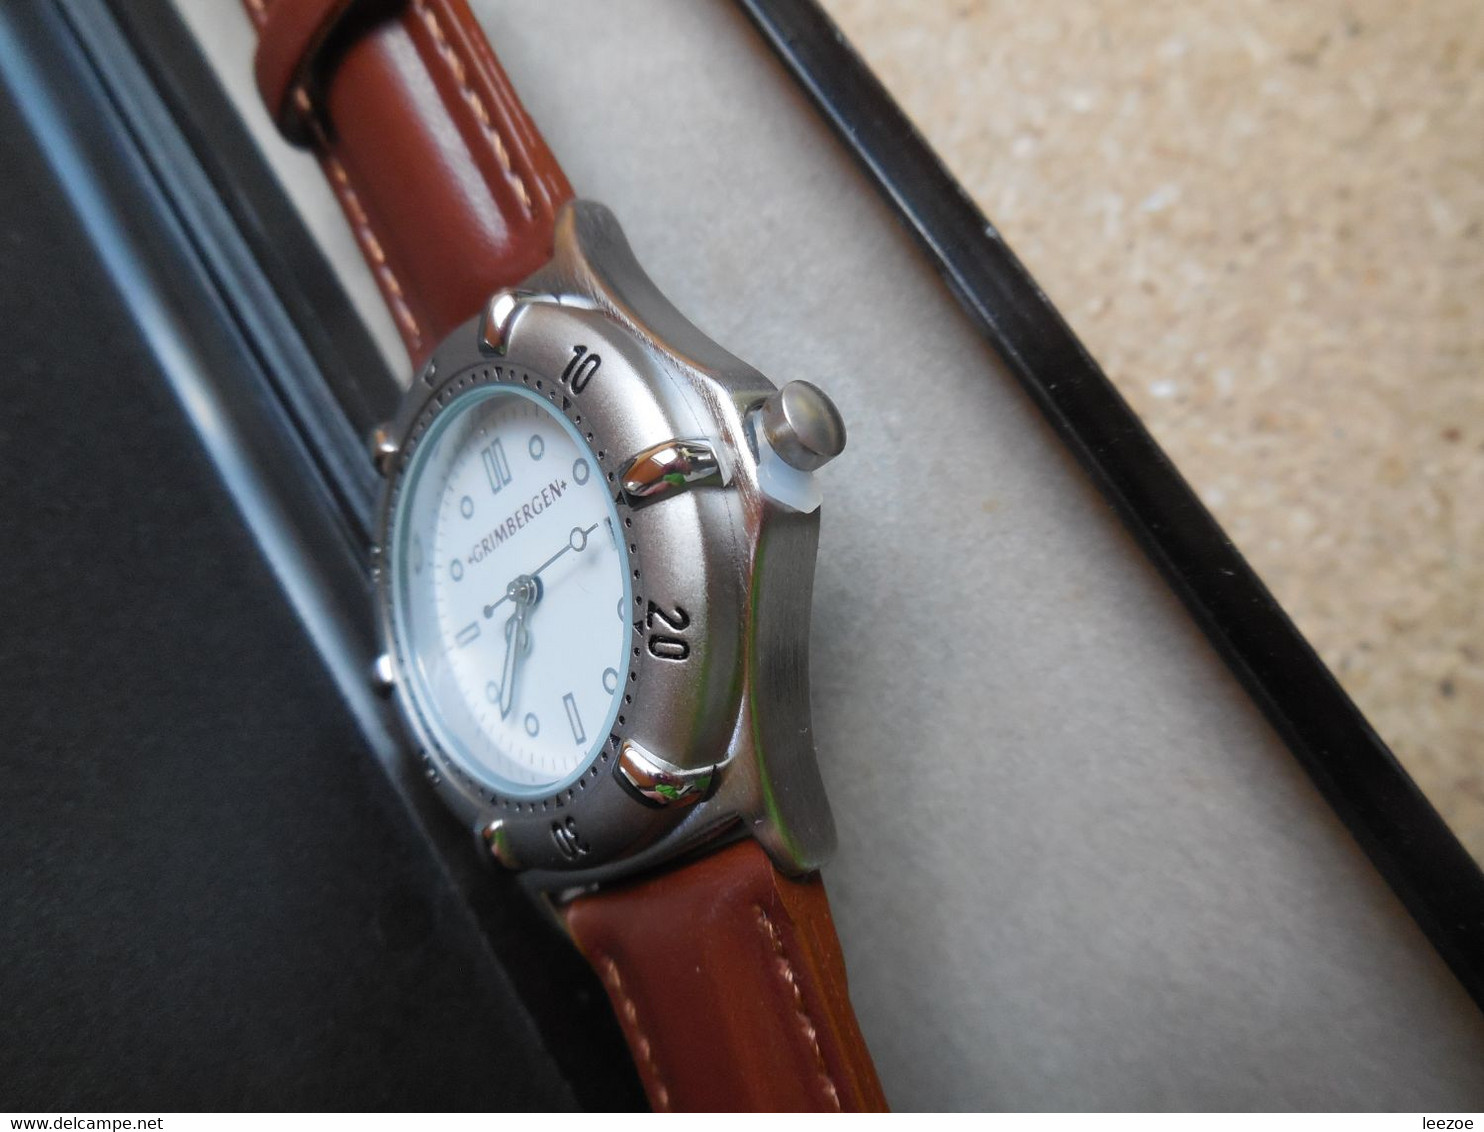 MONTRE, BIERE GRIMBERGEN, Magnifique Montre Publicitaire, Rare - Advertisement Watches